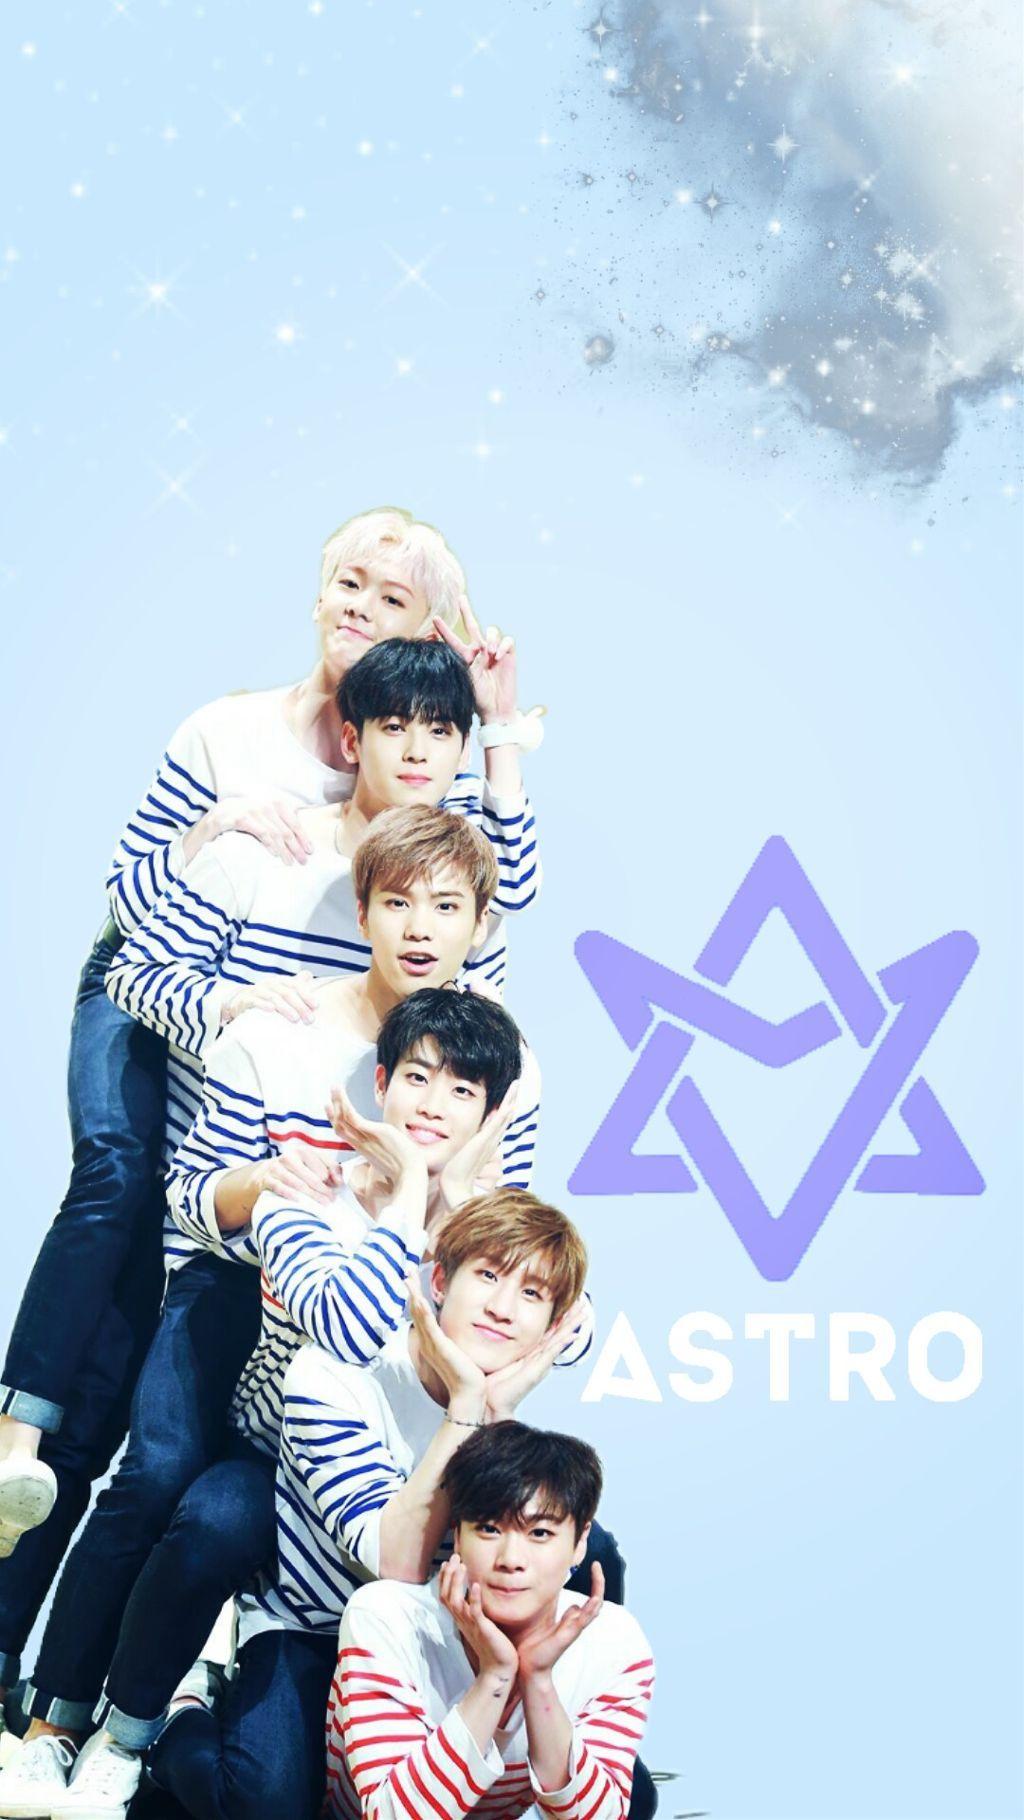 astro astrokpop kpop wallpaper moonbin moonbinastro jin